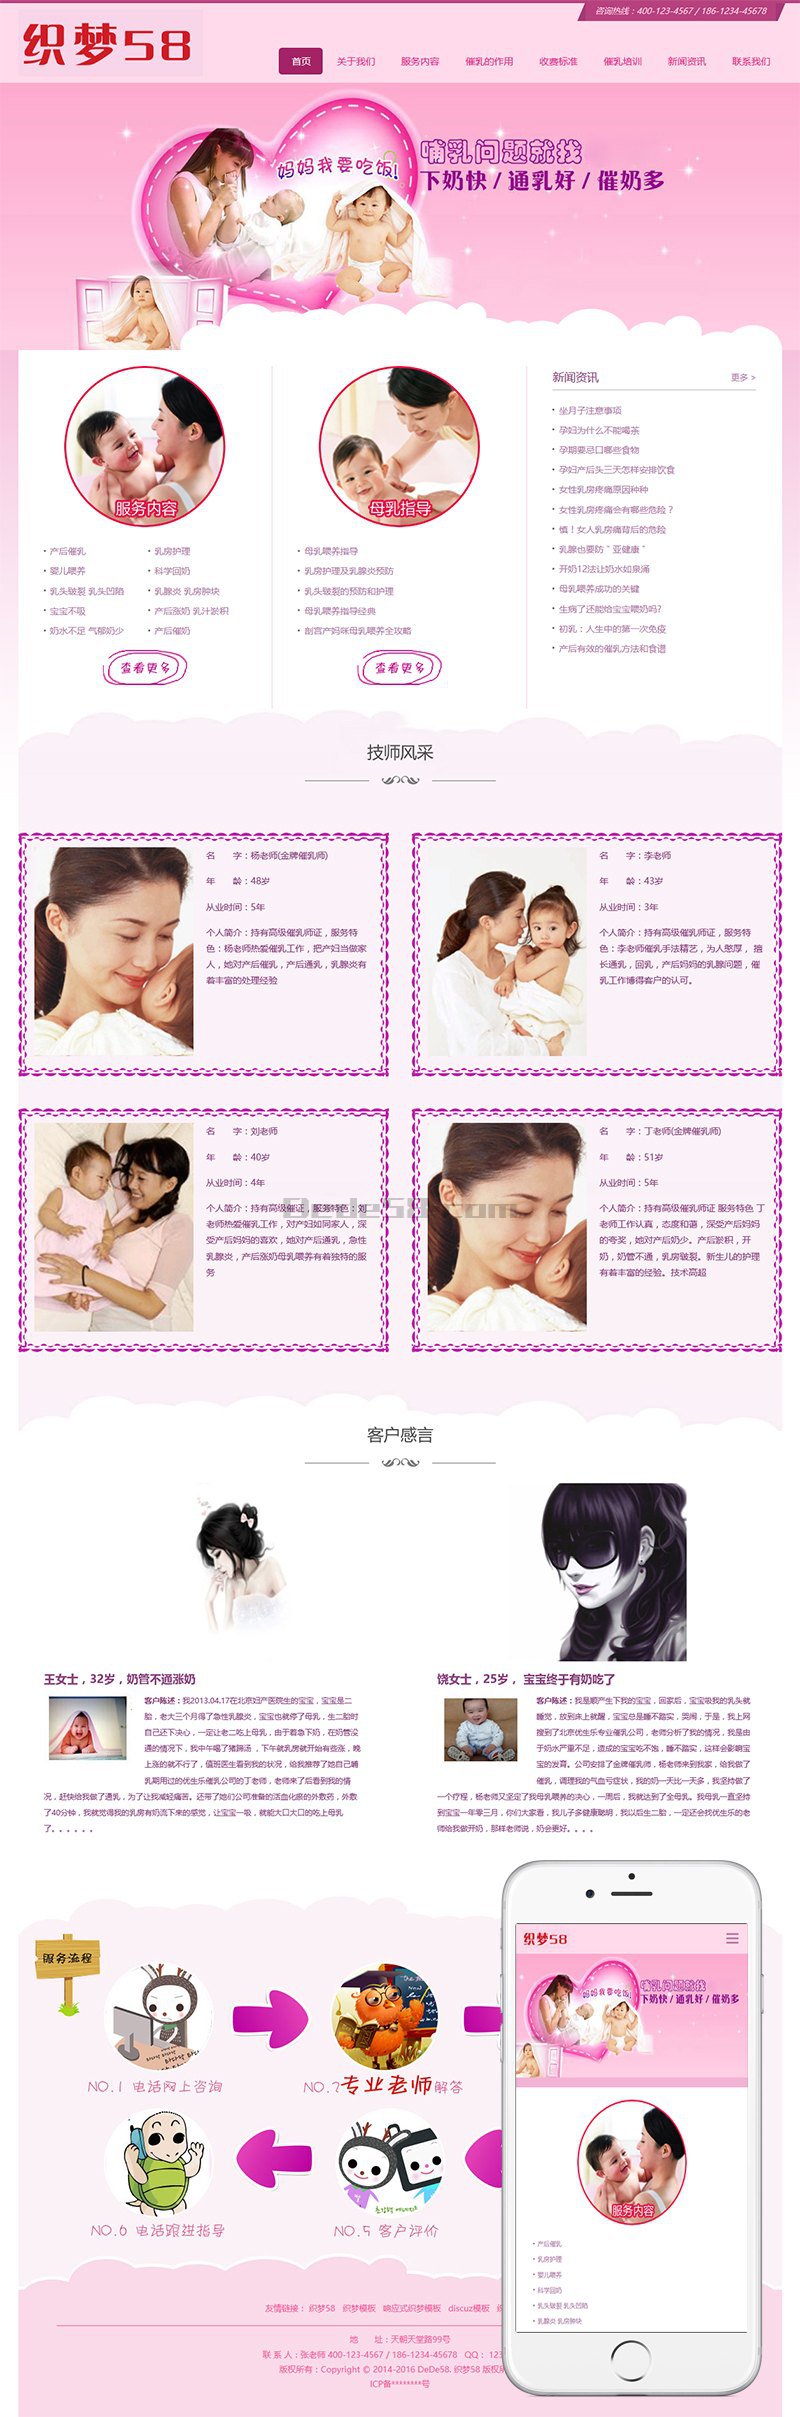 [织梦模板]响应式粉红色母婴催乳类网站模板(自适应设备)